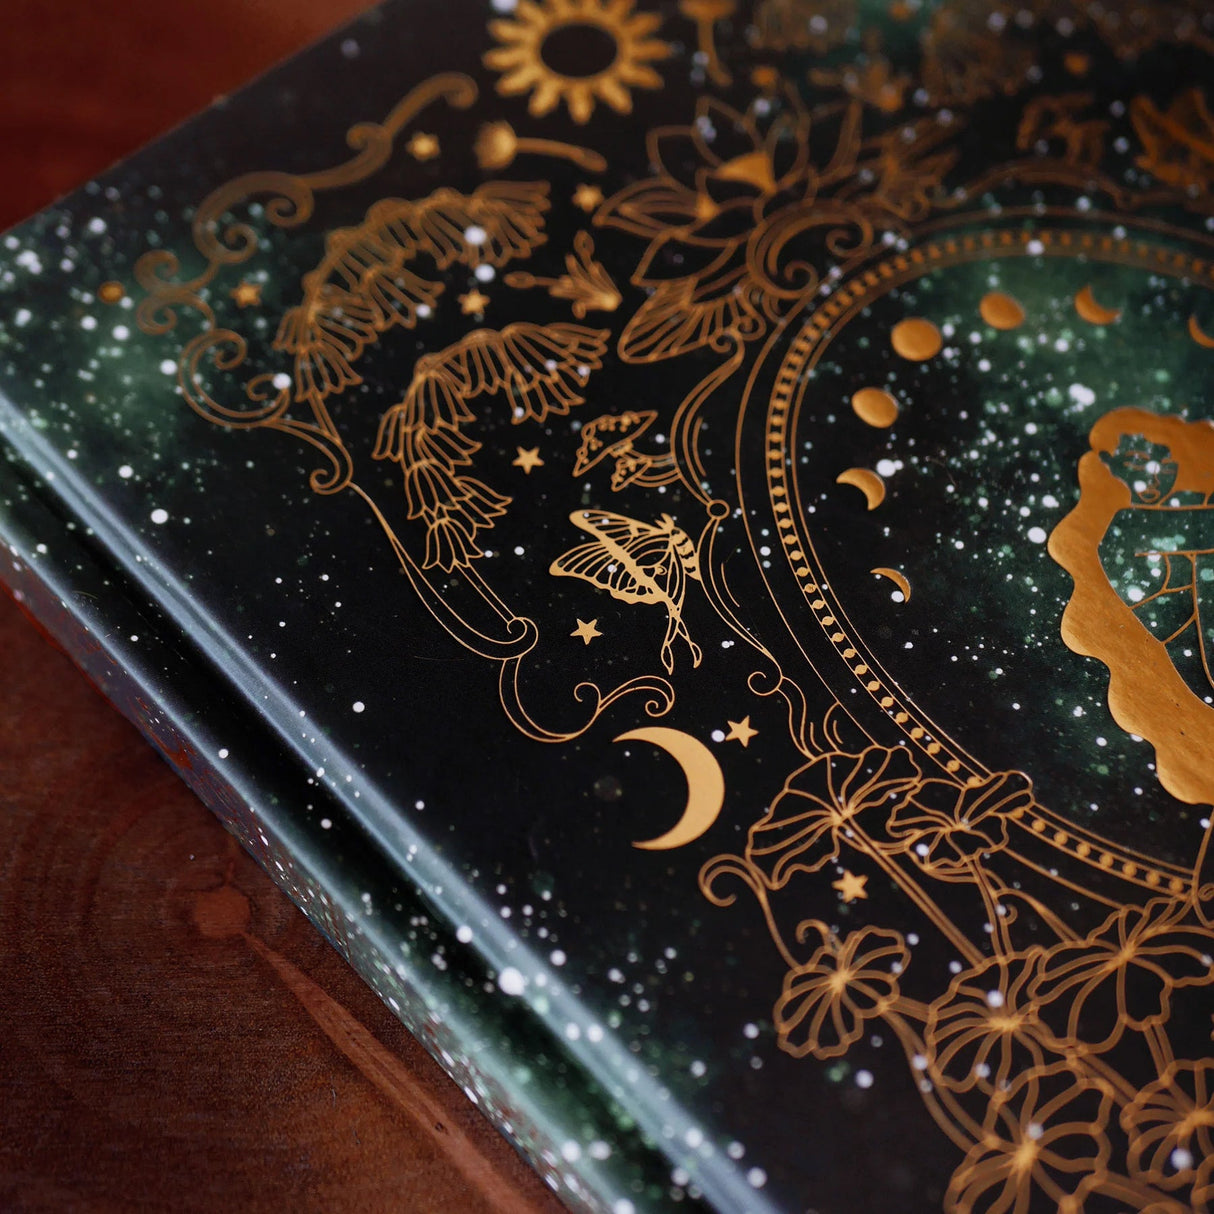 Wonderland Journal gold foil details